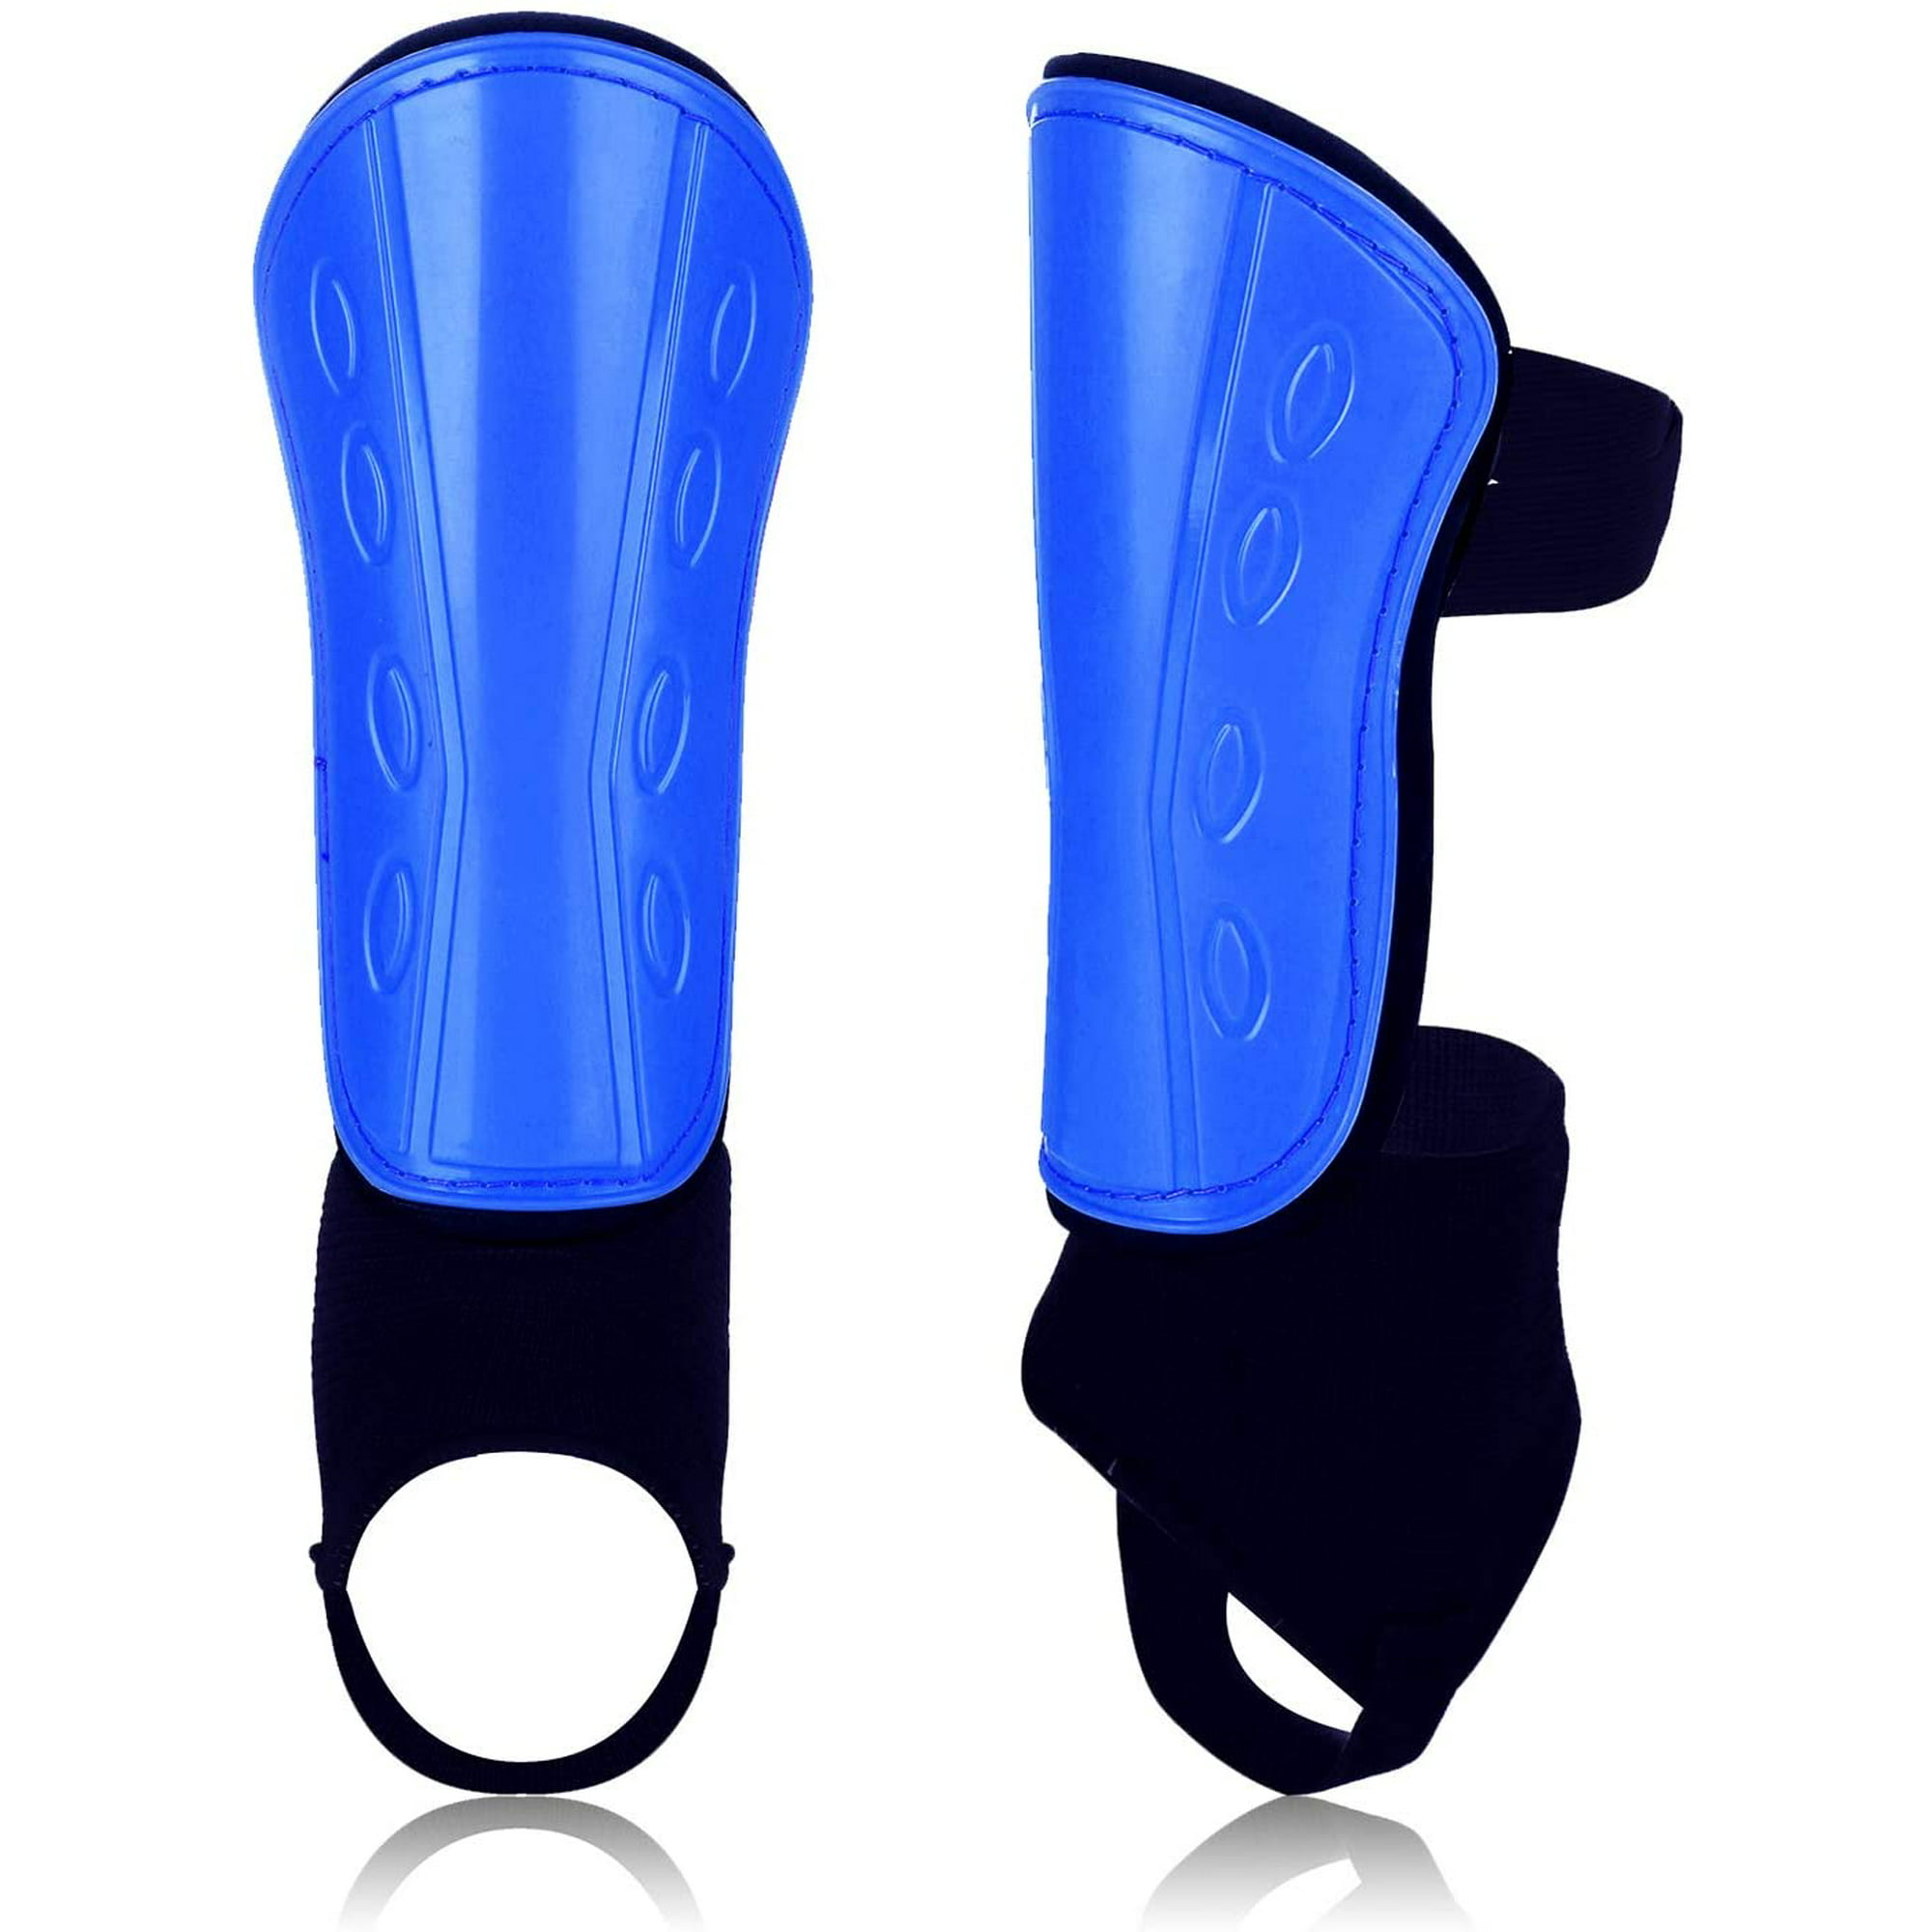 Sportout - Espinilleras de fútbol para adultos y jóvenes, protección  integral para tu pierna, con protección acolchada para el tobillo para  evitar